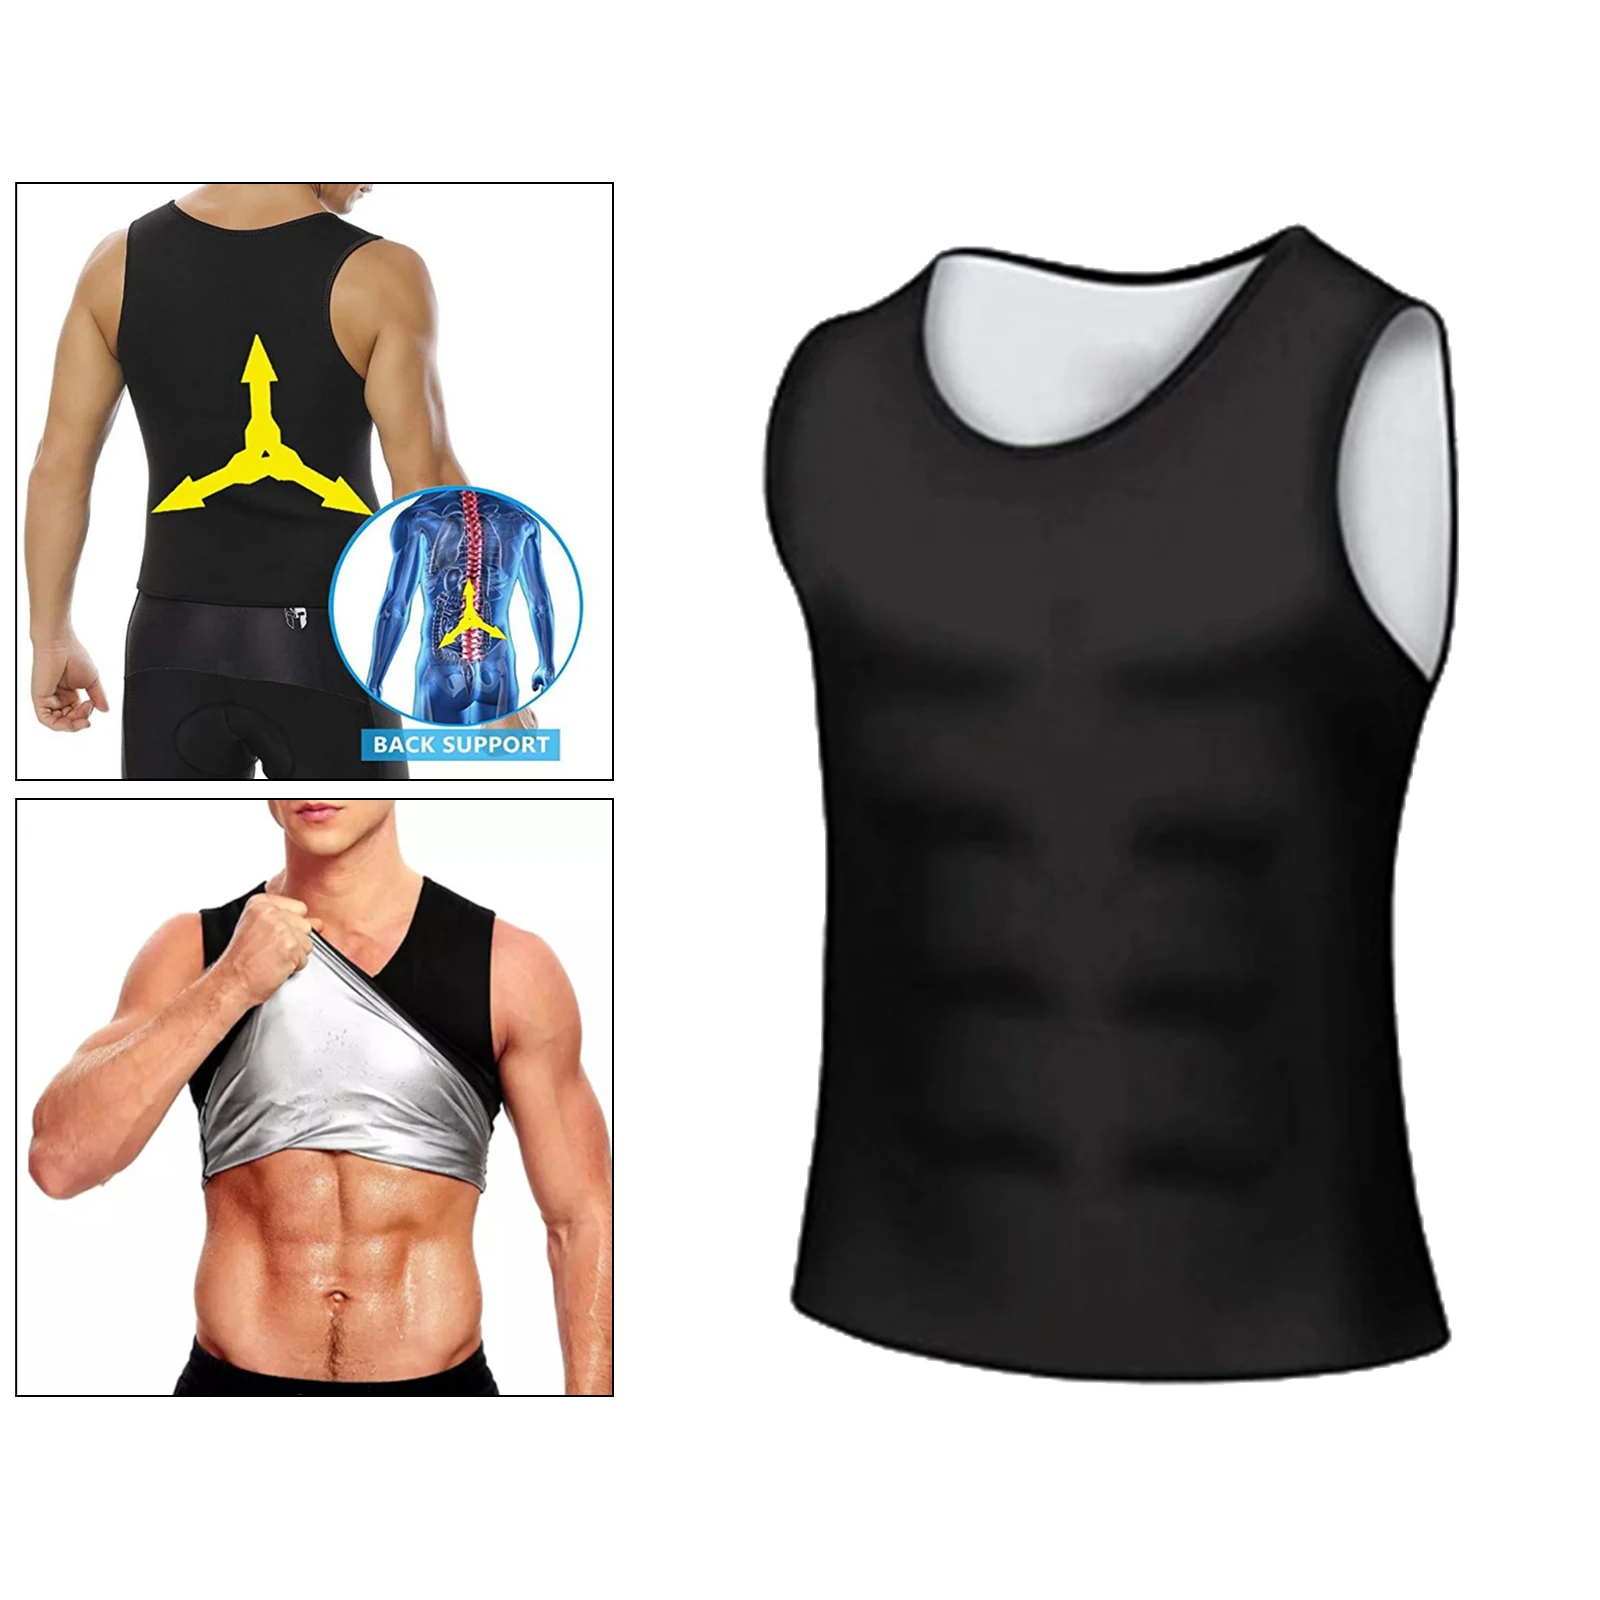 

Men Neoprene Sweat Sauna Vest Body Shaper Vest Waist Trainer Slimming Vest Exercise Abdomen Shapewear Weight Loss Corset